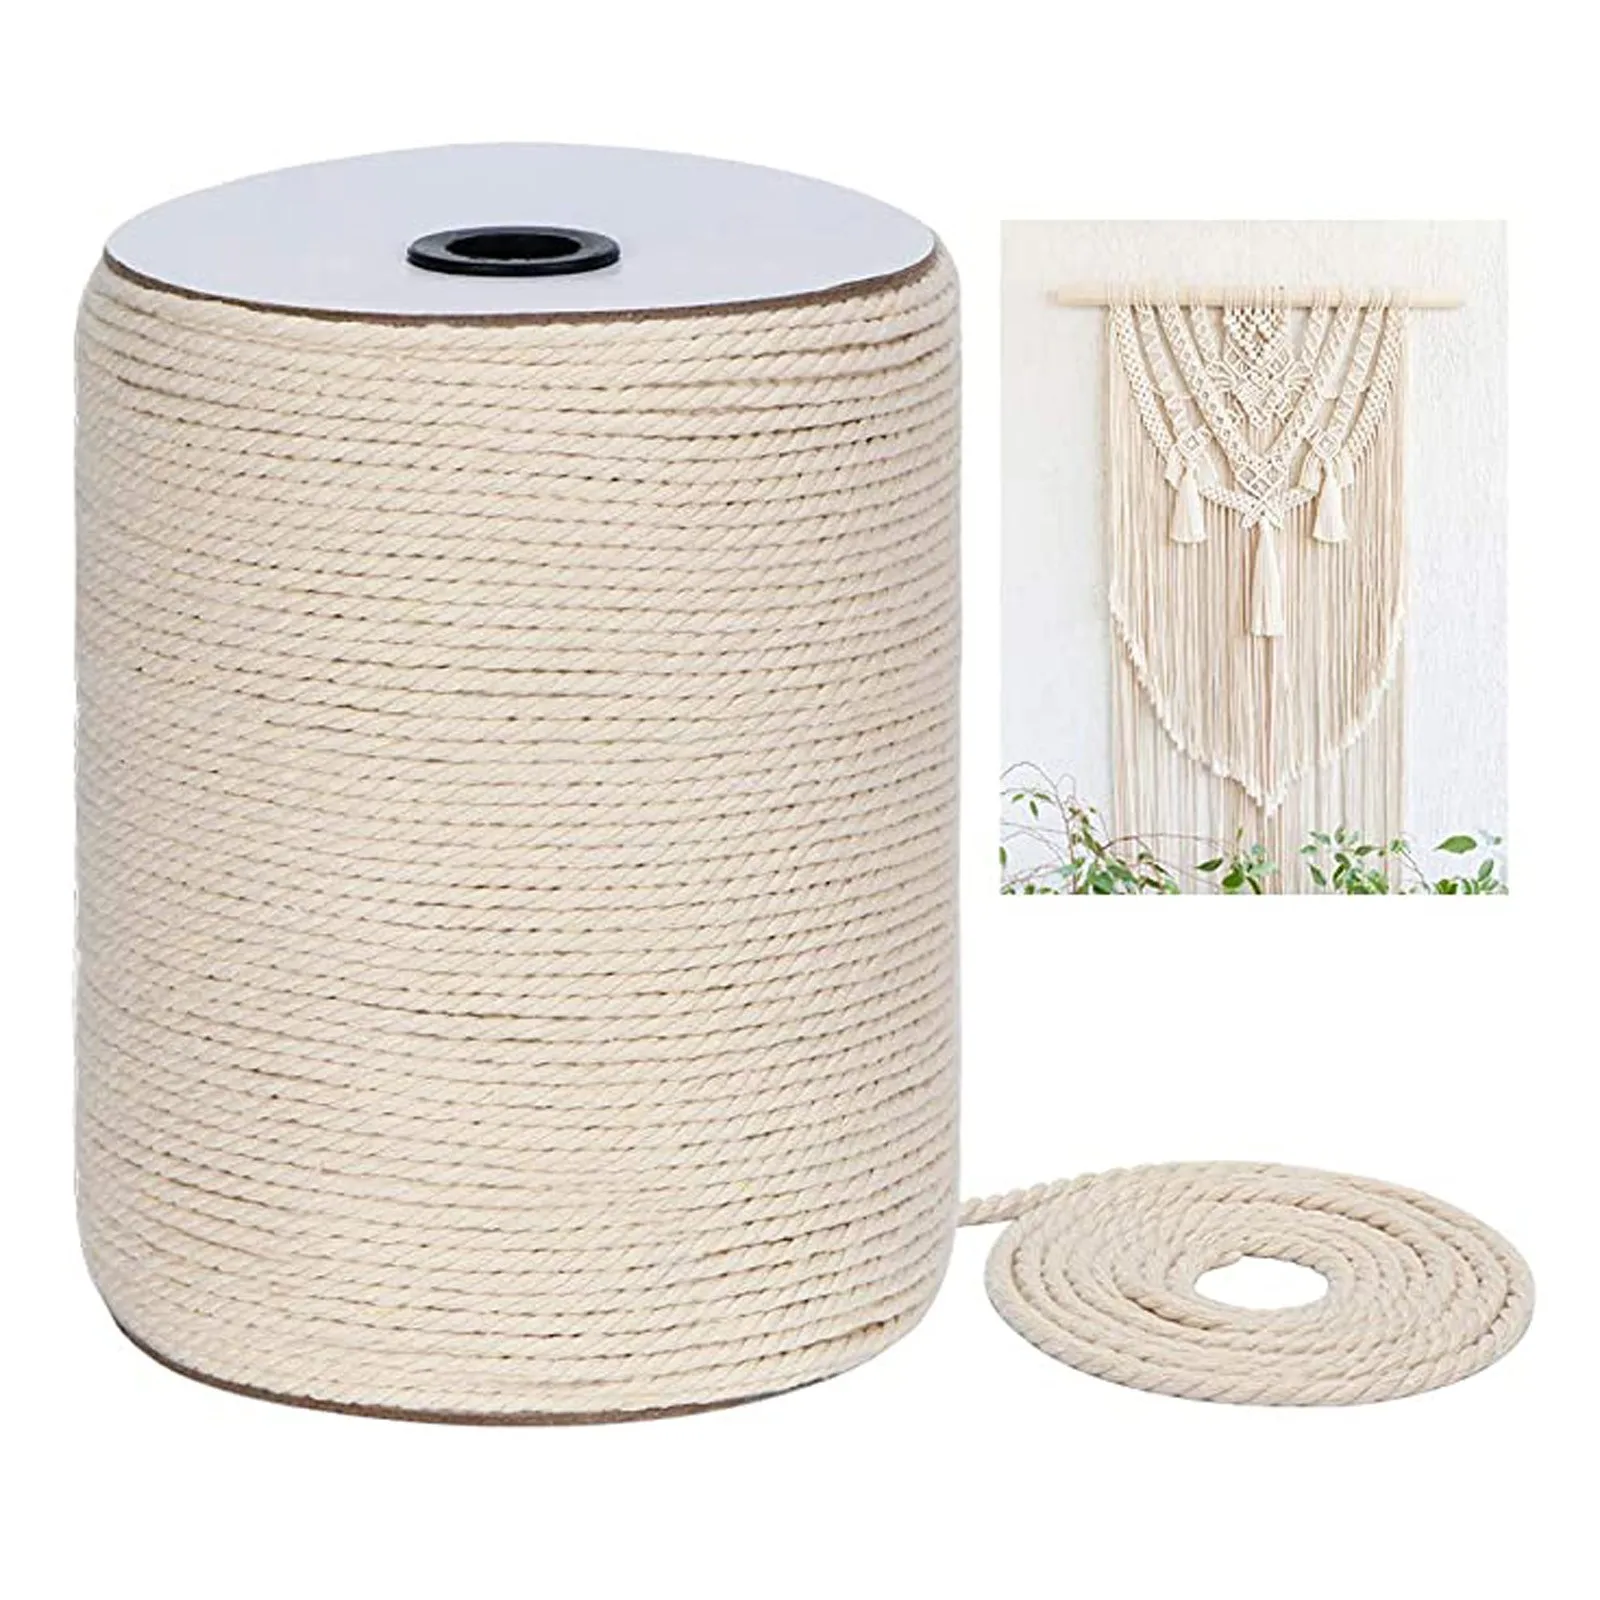 300м*3 мм DIY макраме веревка скрученная струна хлопковый шнур для ручной изготовки натуральных декоративных аксессуаров для дома, свадьбы и вечеринок.